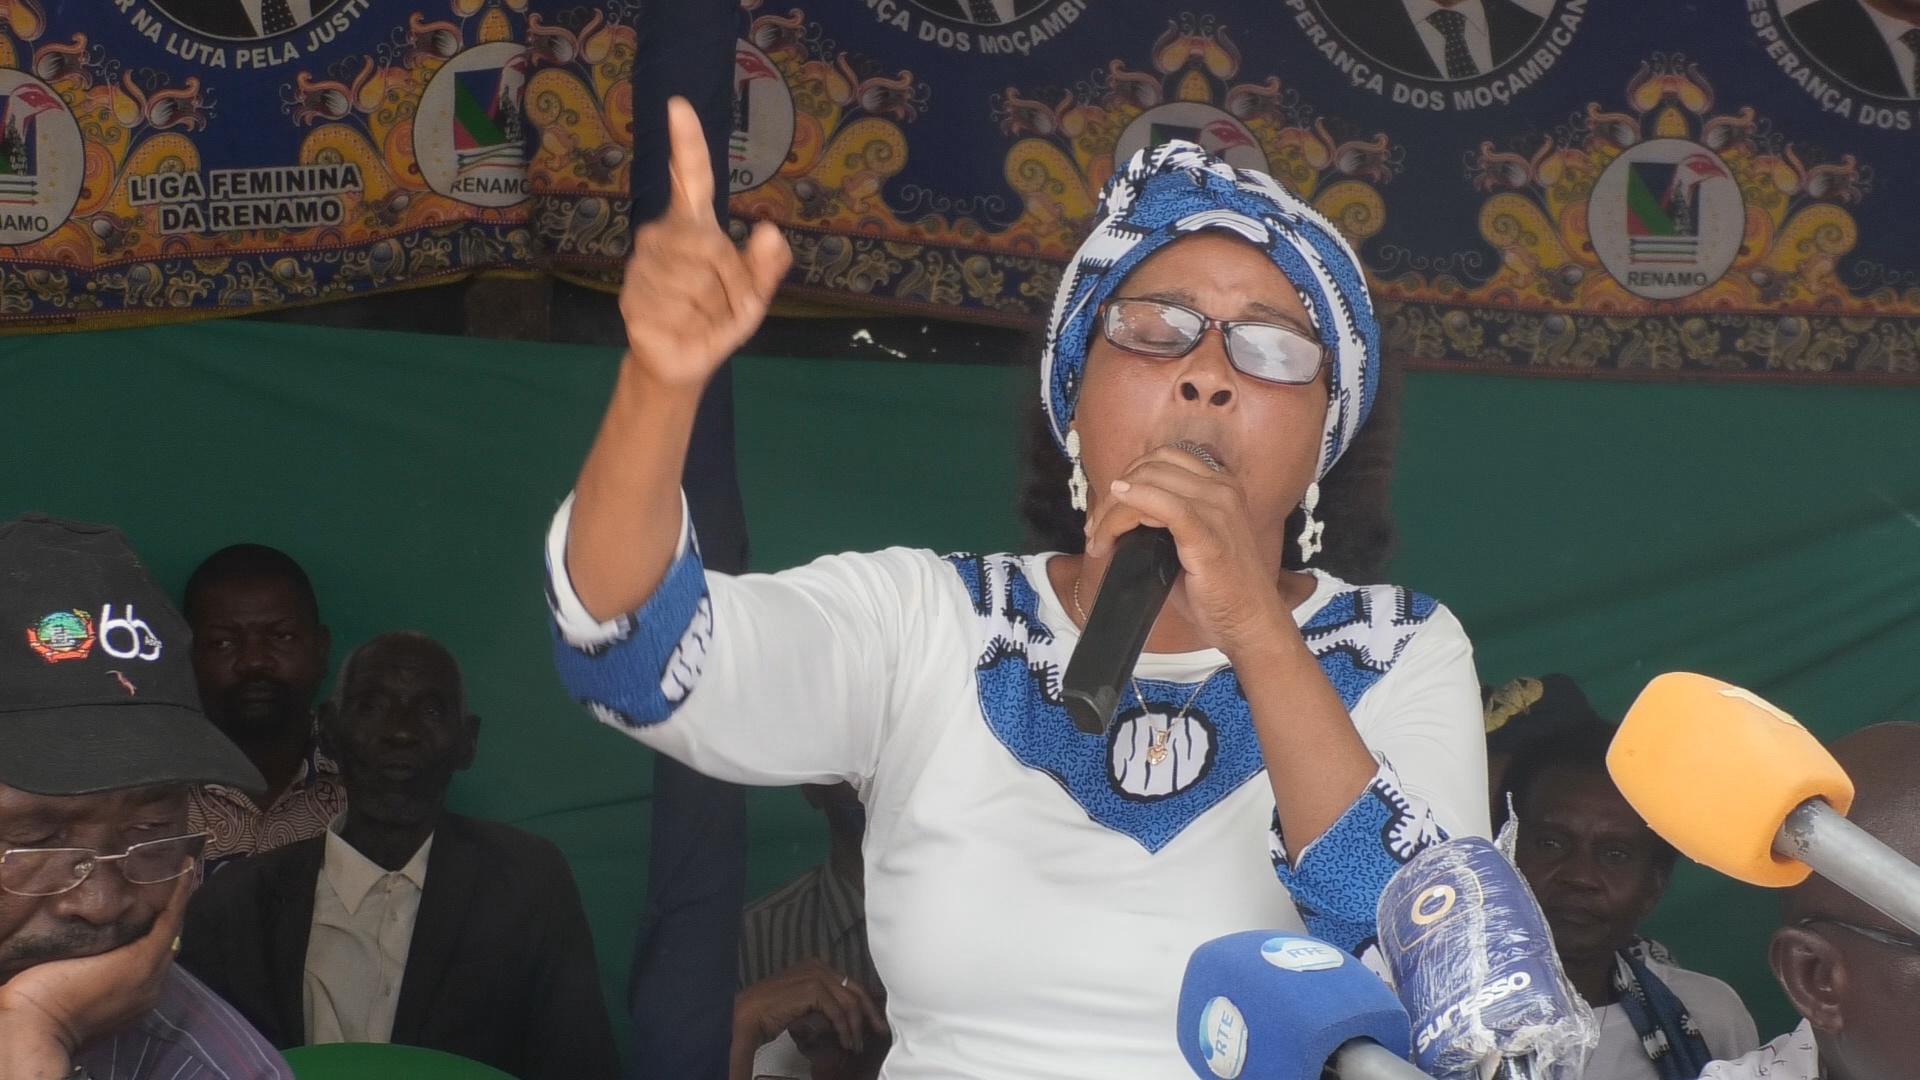 Mulheres da Renamo em Nampula denunciam violência política